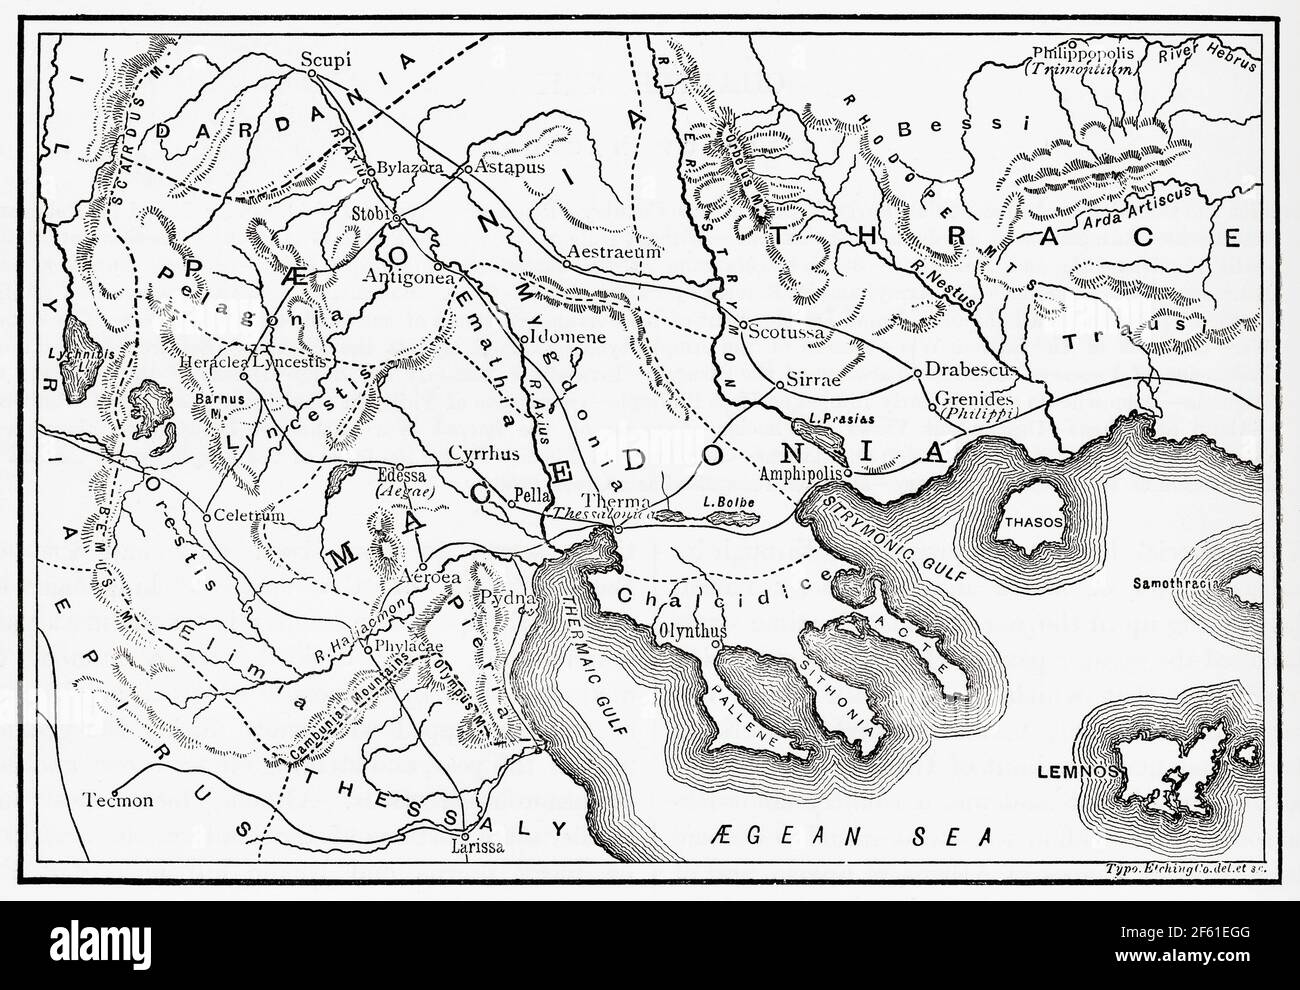 Mappa della Macedonia e dei distretti adiacenti. Dalla storia universale di Cassell, pubblicata nel 1888. Foto Stock